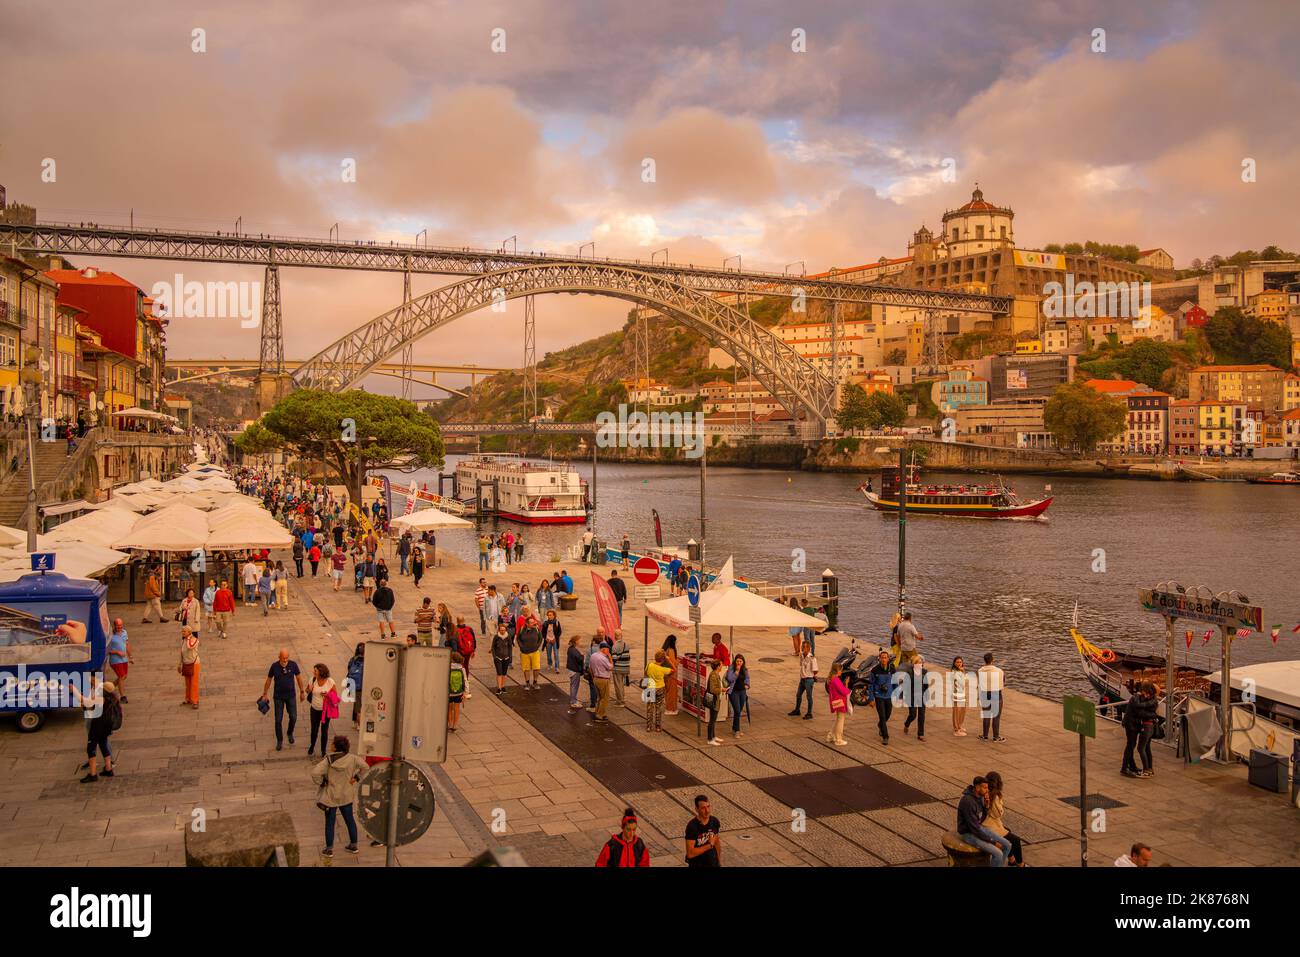 Vista del ponte di ferro Dom Luis i e delle caffetterie lungo il fiume Douro, patrimonio dell'umanità dell'UNESCO, Porto, Norte, Portogallo, Europa Foto Stock